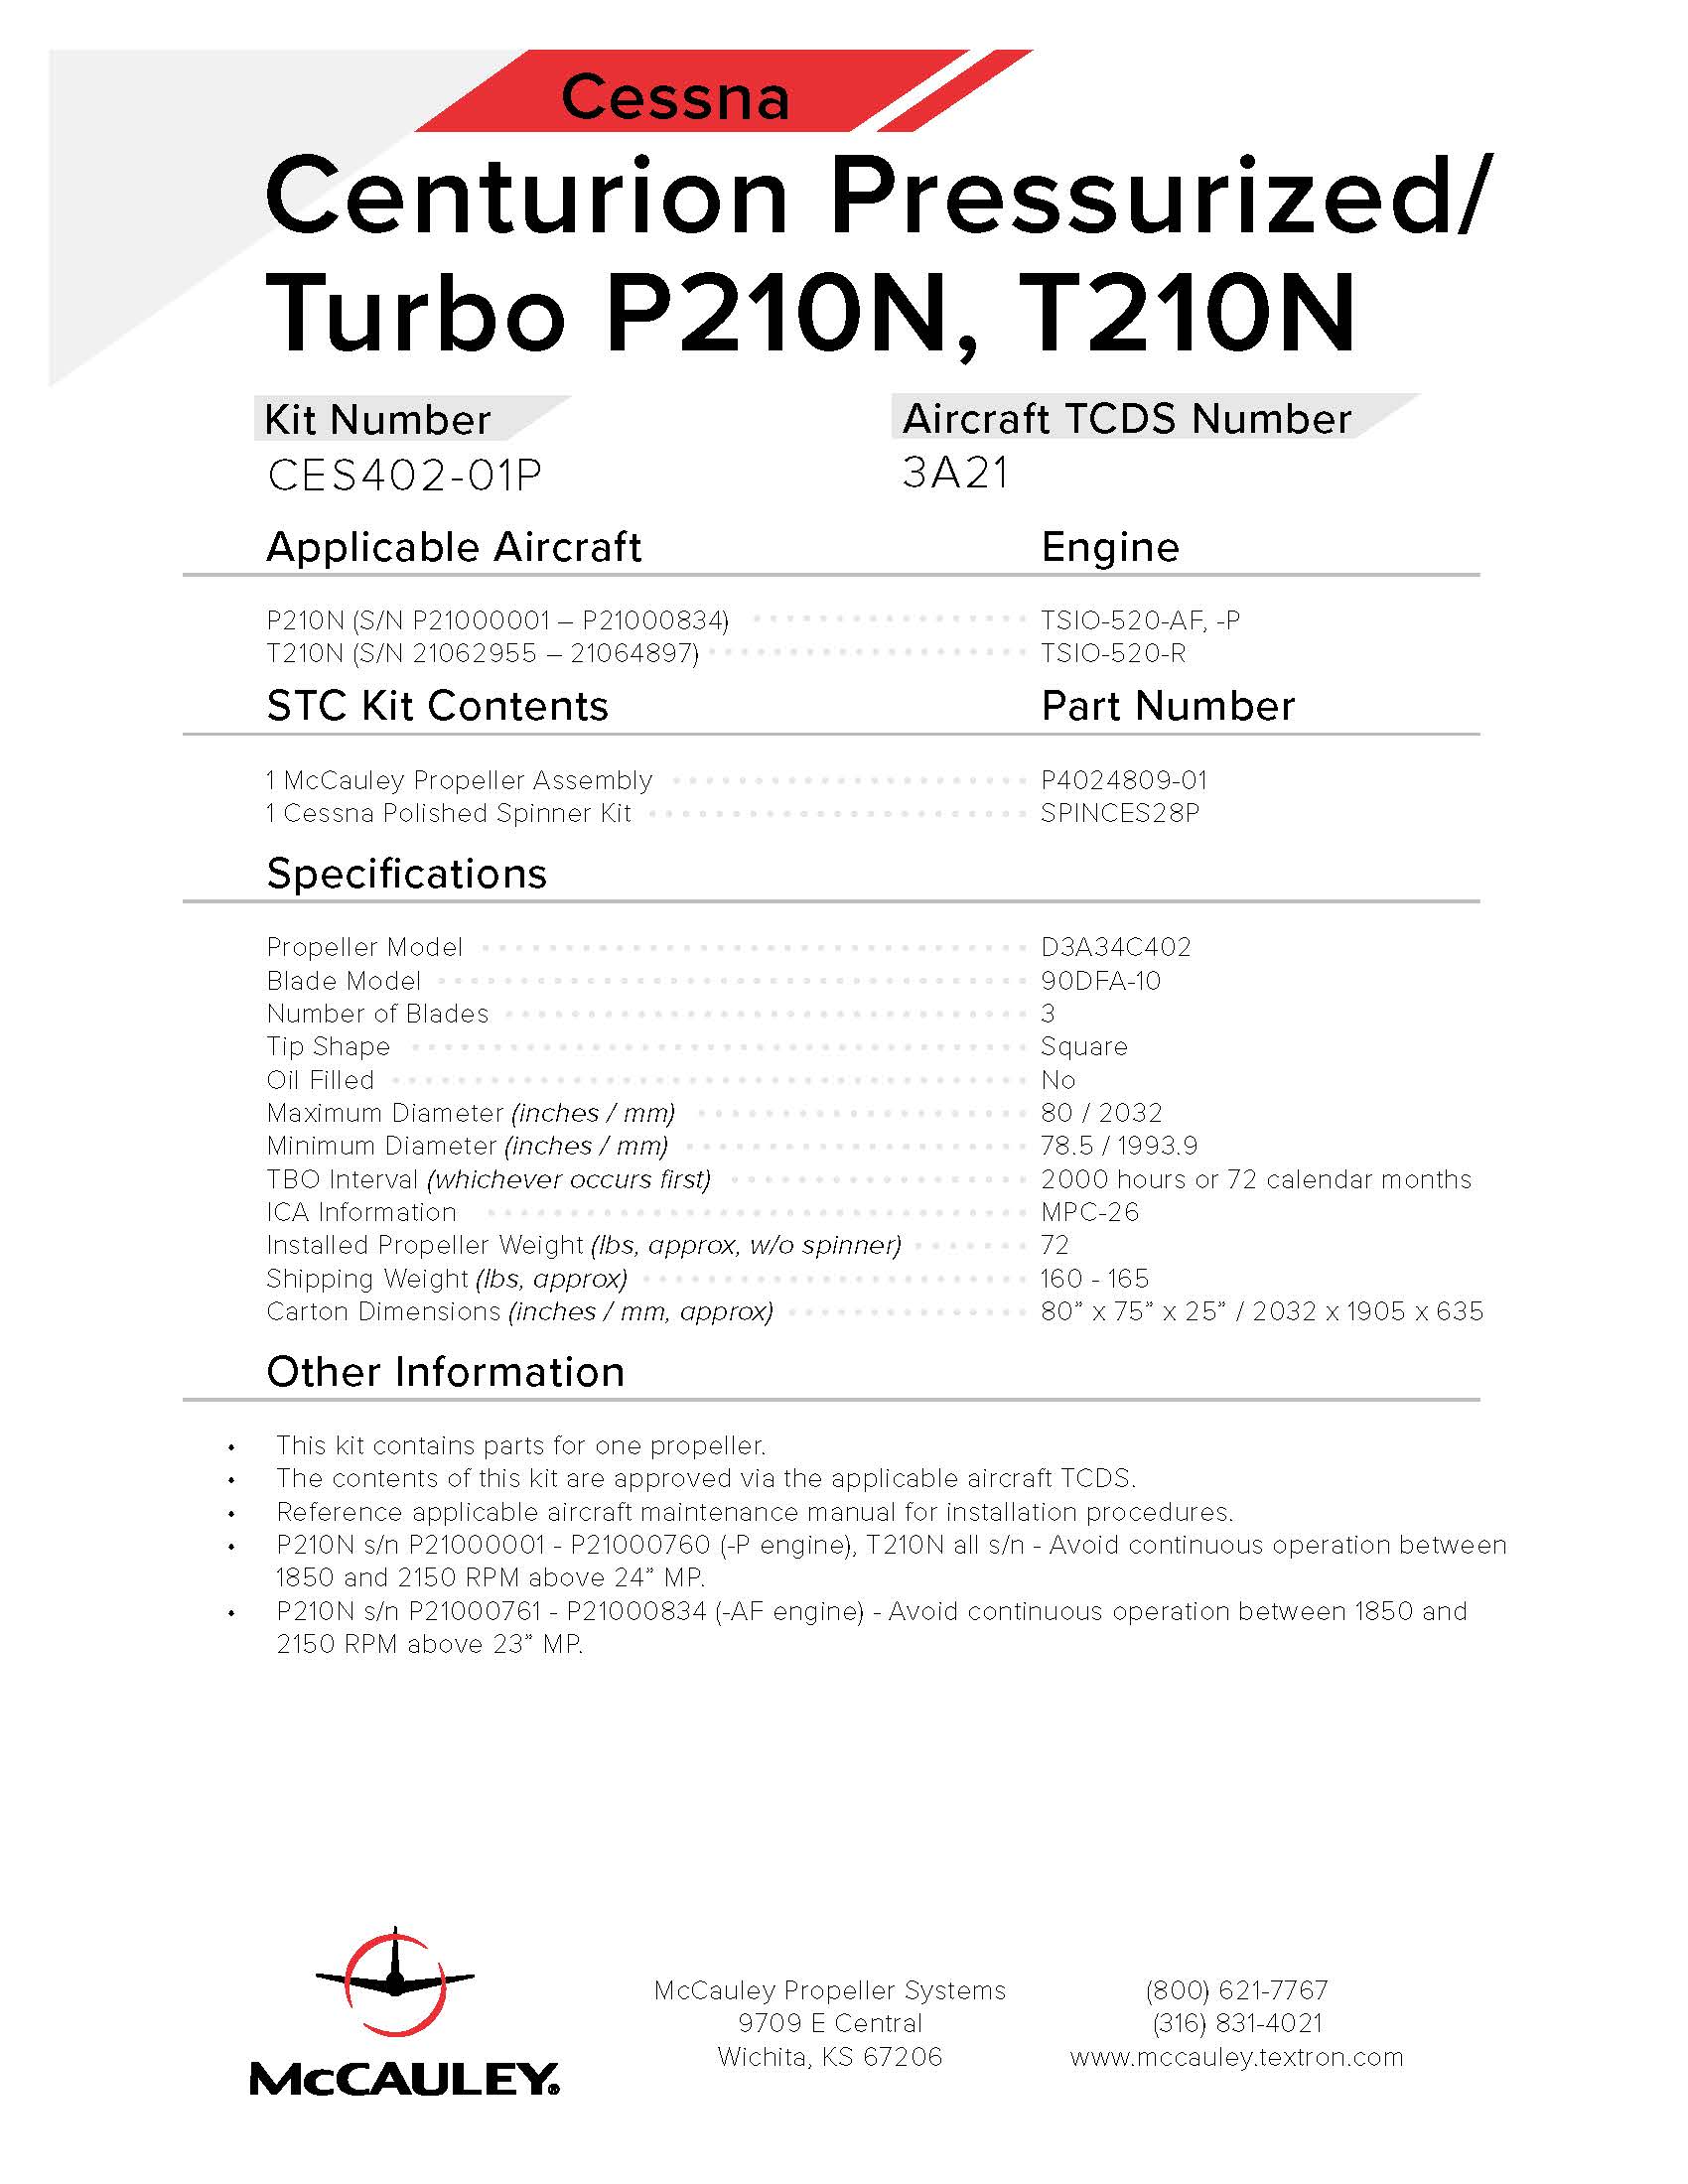 CESSNA-CENTURION-PRESSURIZED-TURBO-P210N-T210M-N-CES402-01P-PAGE-1